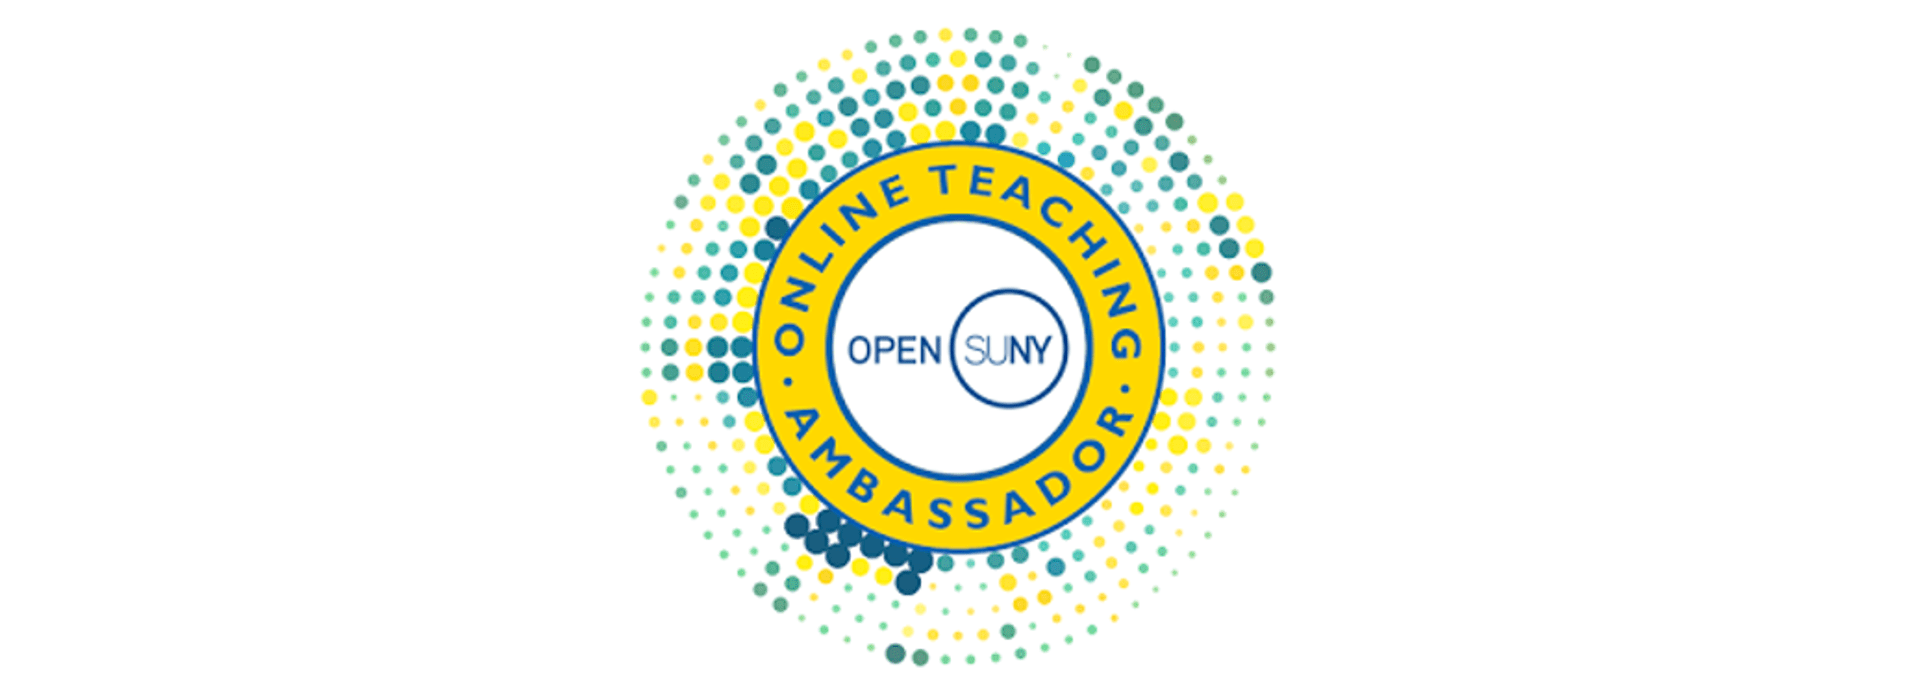 Open SUNY Online Teaching Ambassador badge